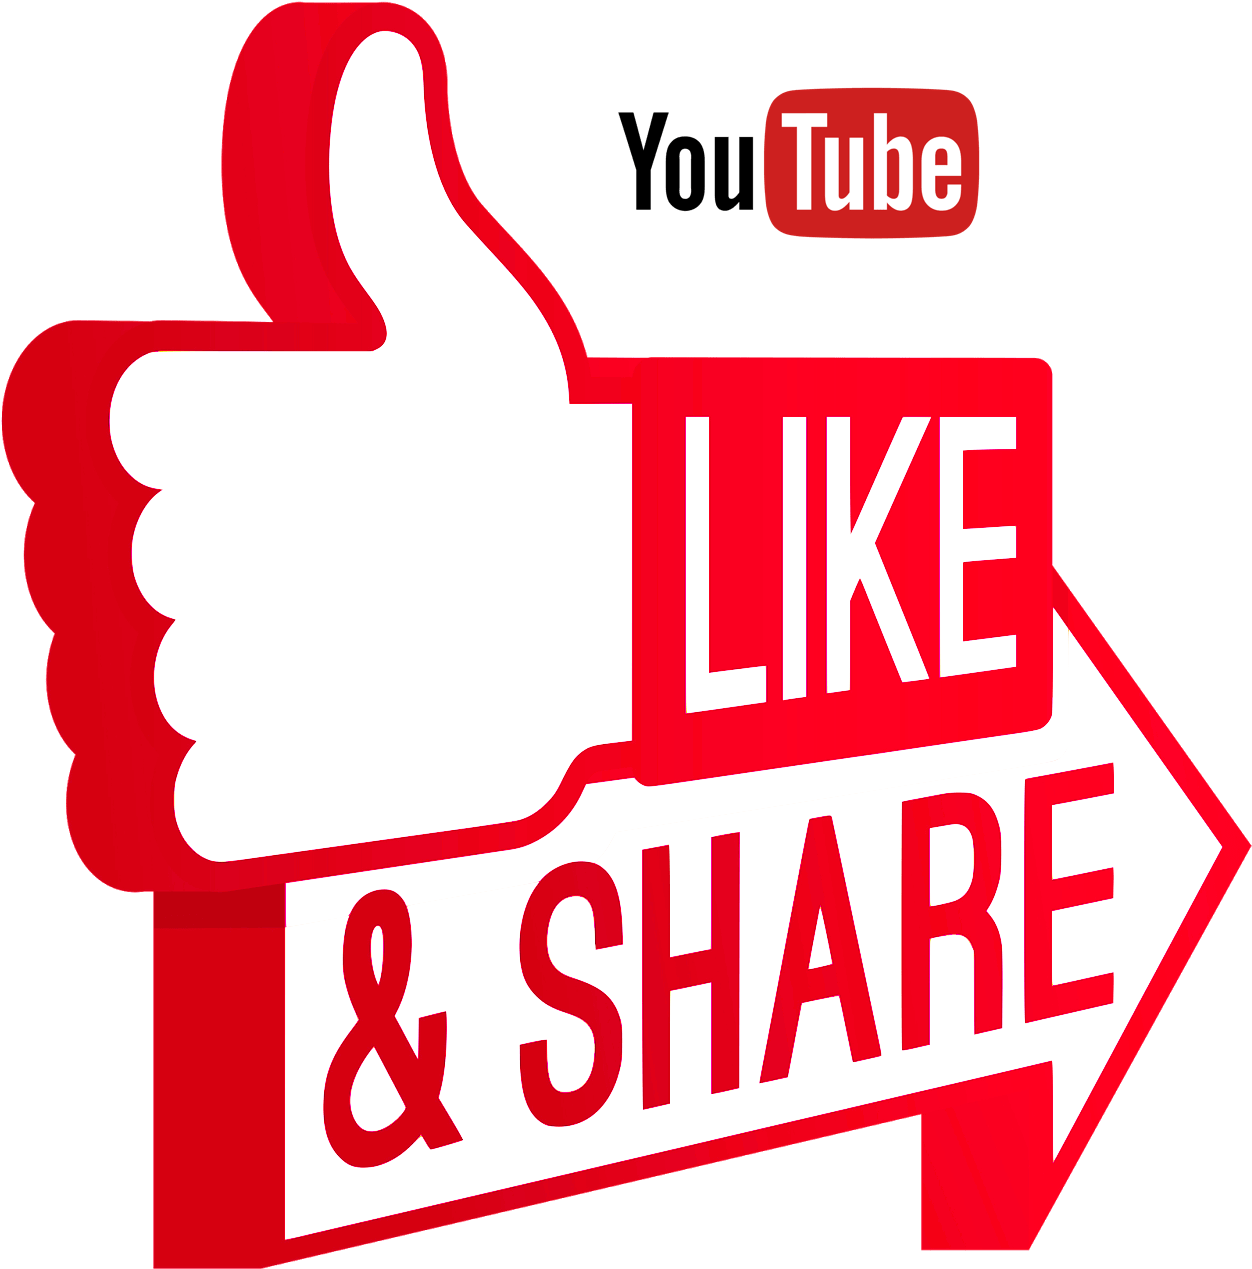 Download Like And Share On Youtube sẽ giúp bạn tăng khả năng quảng cáo và tăng sự tương tác cho video của mình. Bằng cách tải xuống, like và chia sẻ video trên Youtube, bạn sẽ thu hút được nhiều người xem hơn và tăng khả năng tiếp cận đối tượng khách hàng mục tiêu của bạn.